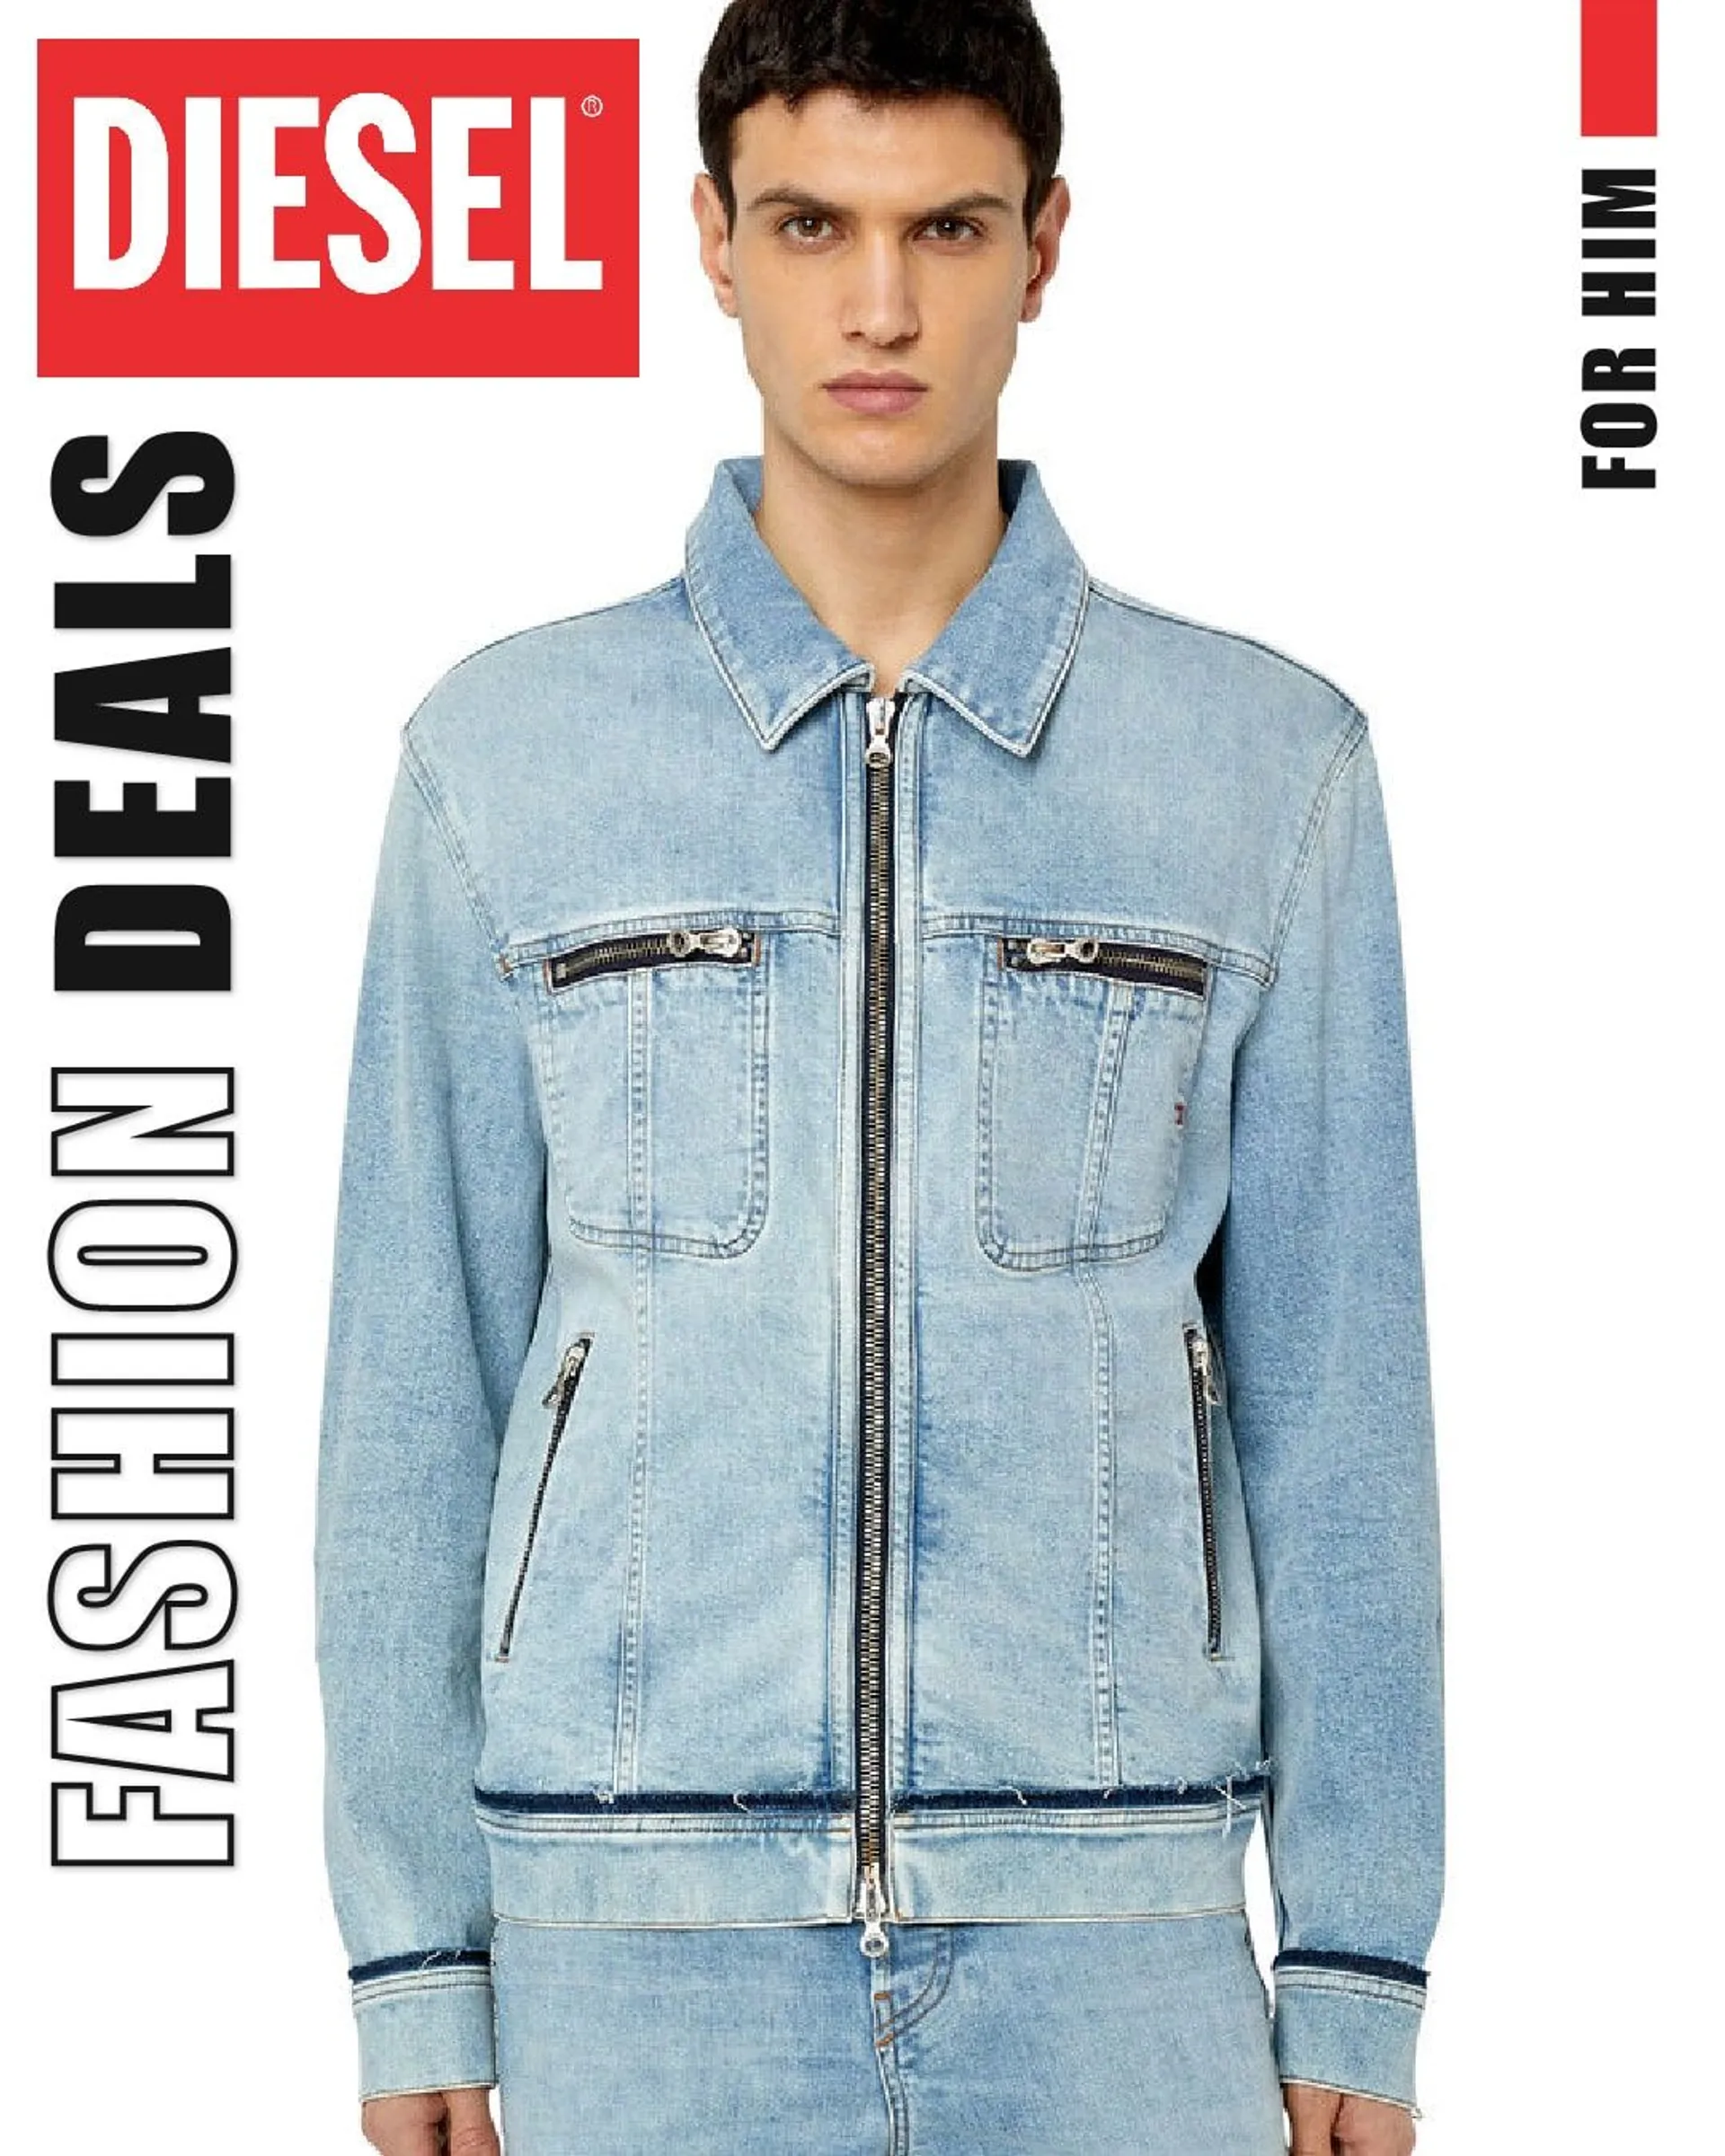 Diesel - Fashion Men